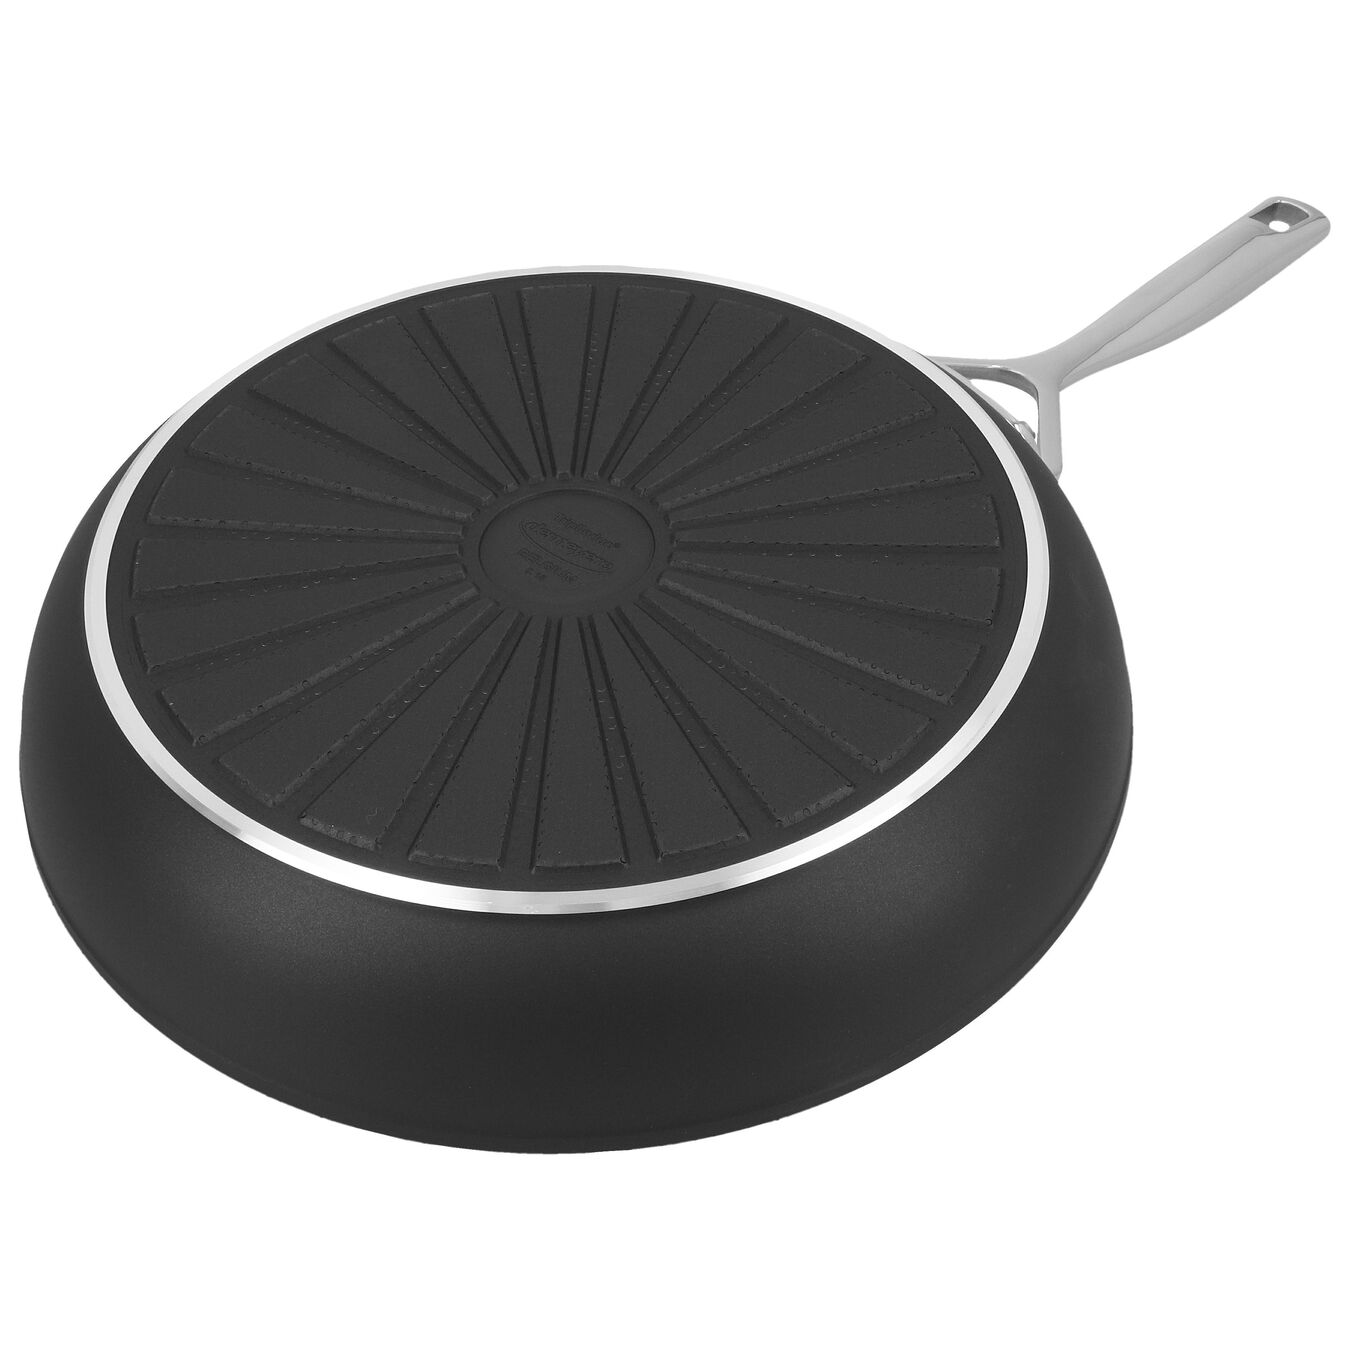 28 cm Aluminium Frying pan silver-black,,large 2